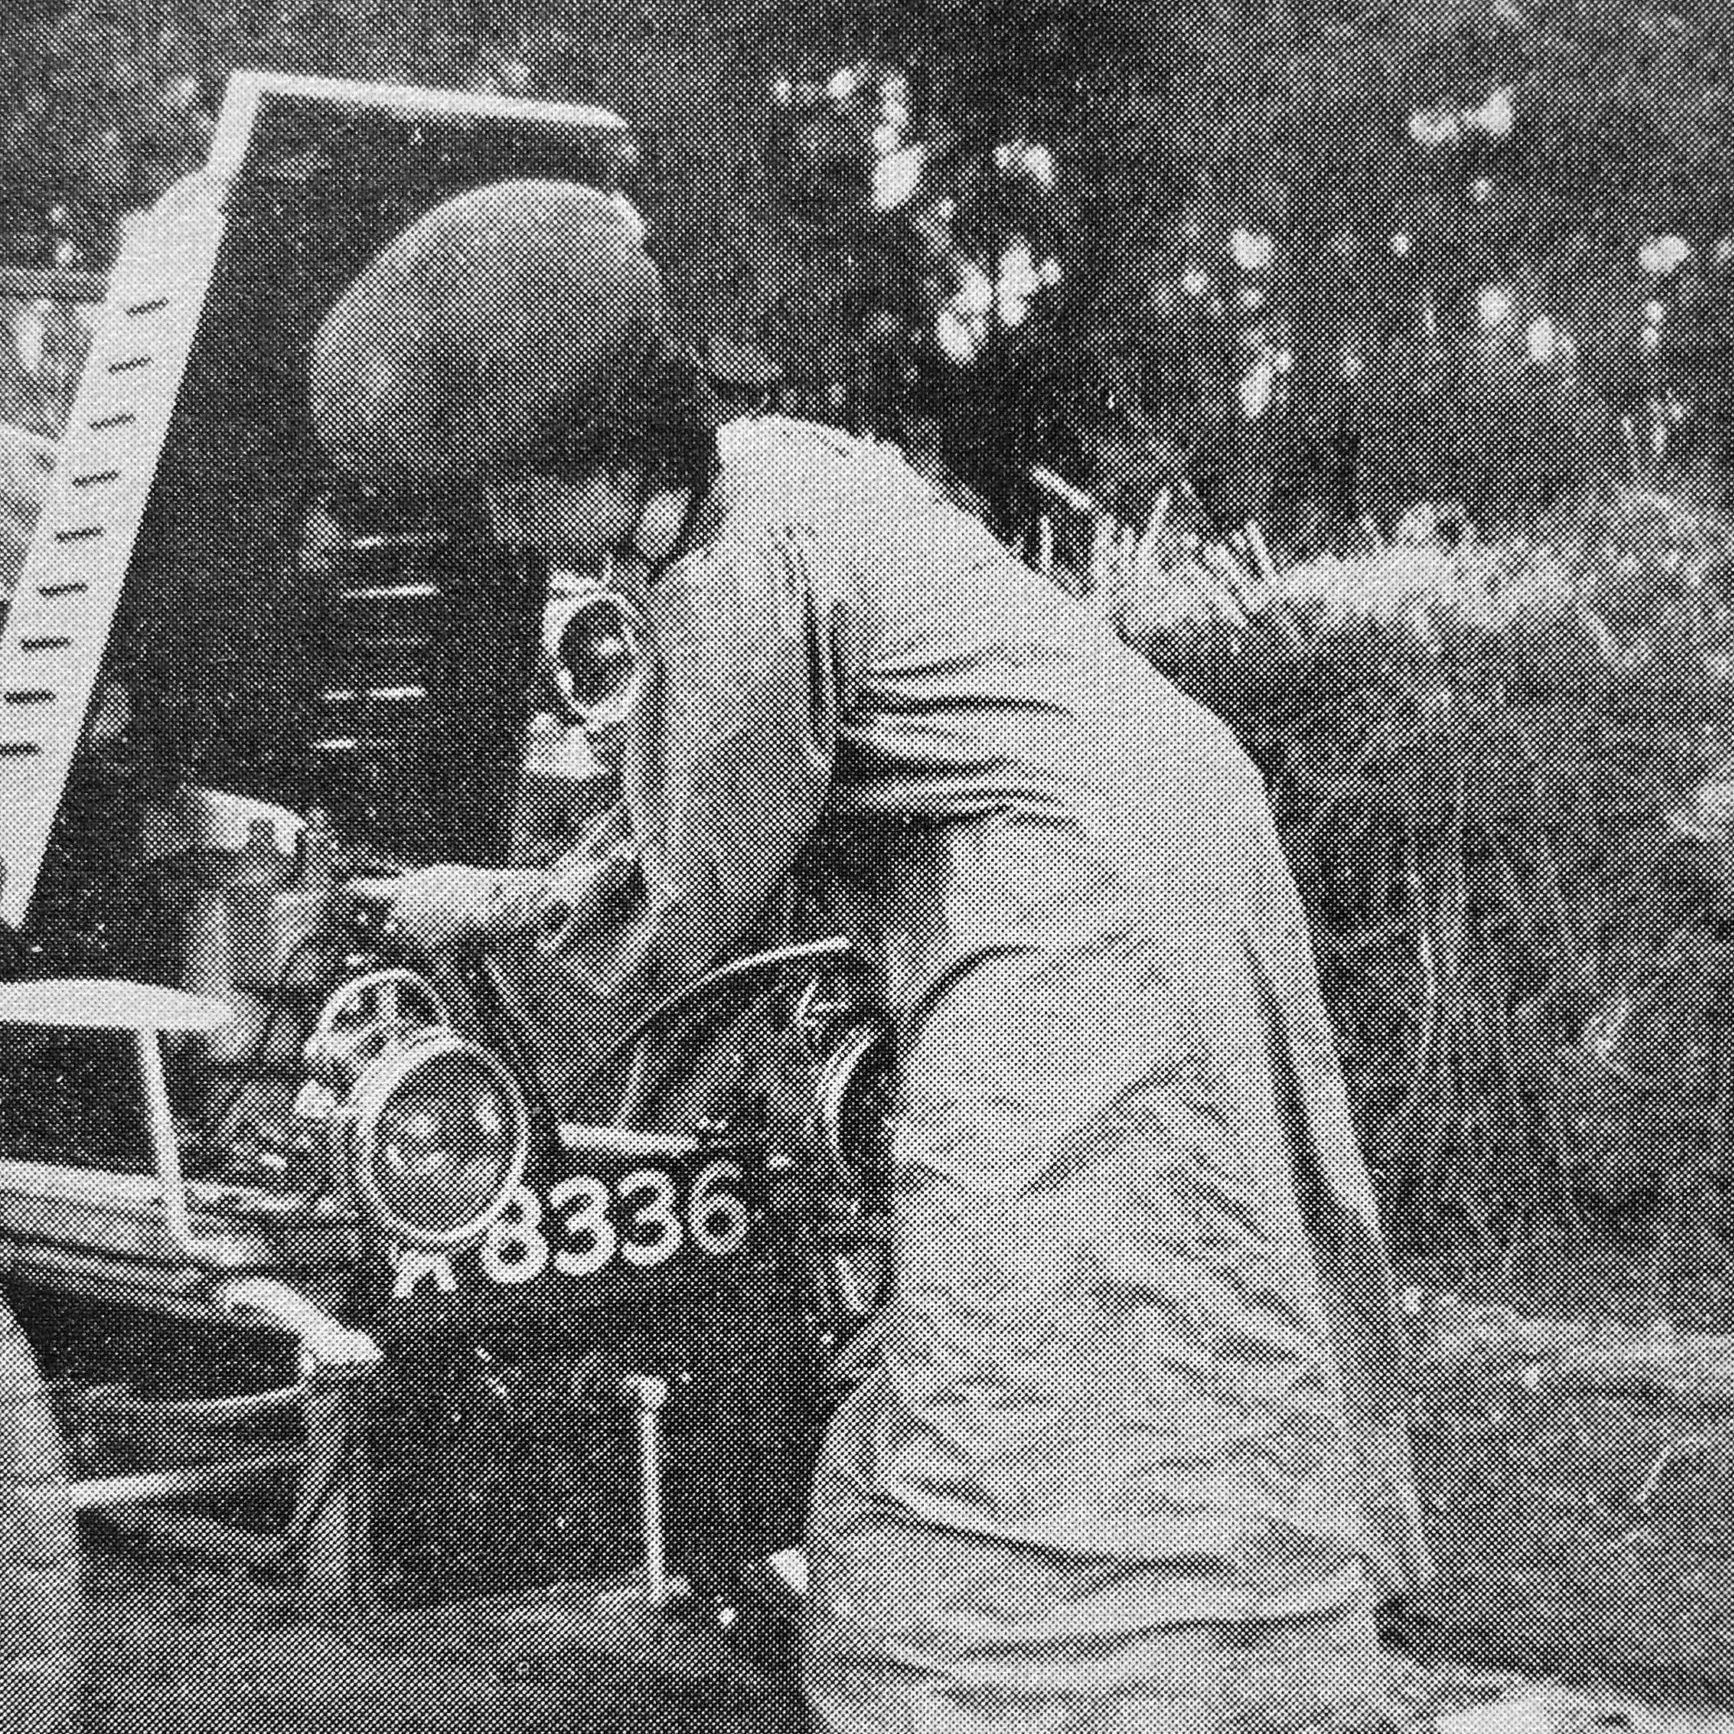 Dorothy Levitt working on her car